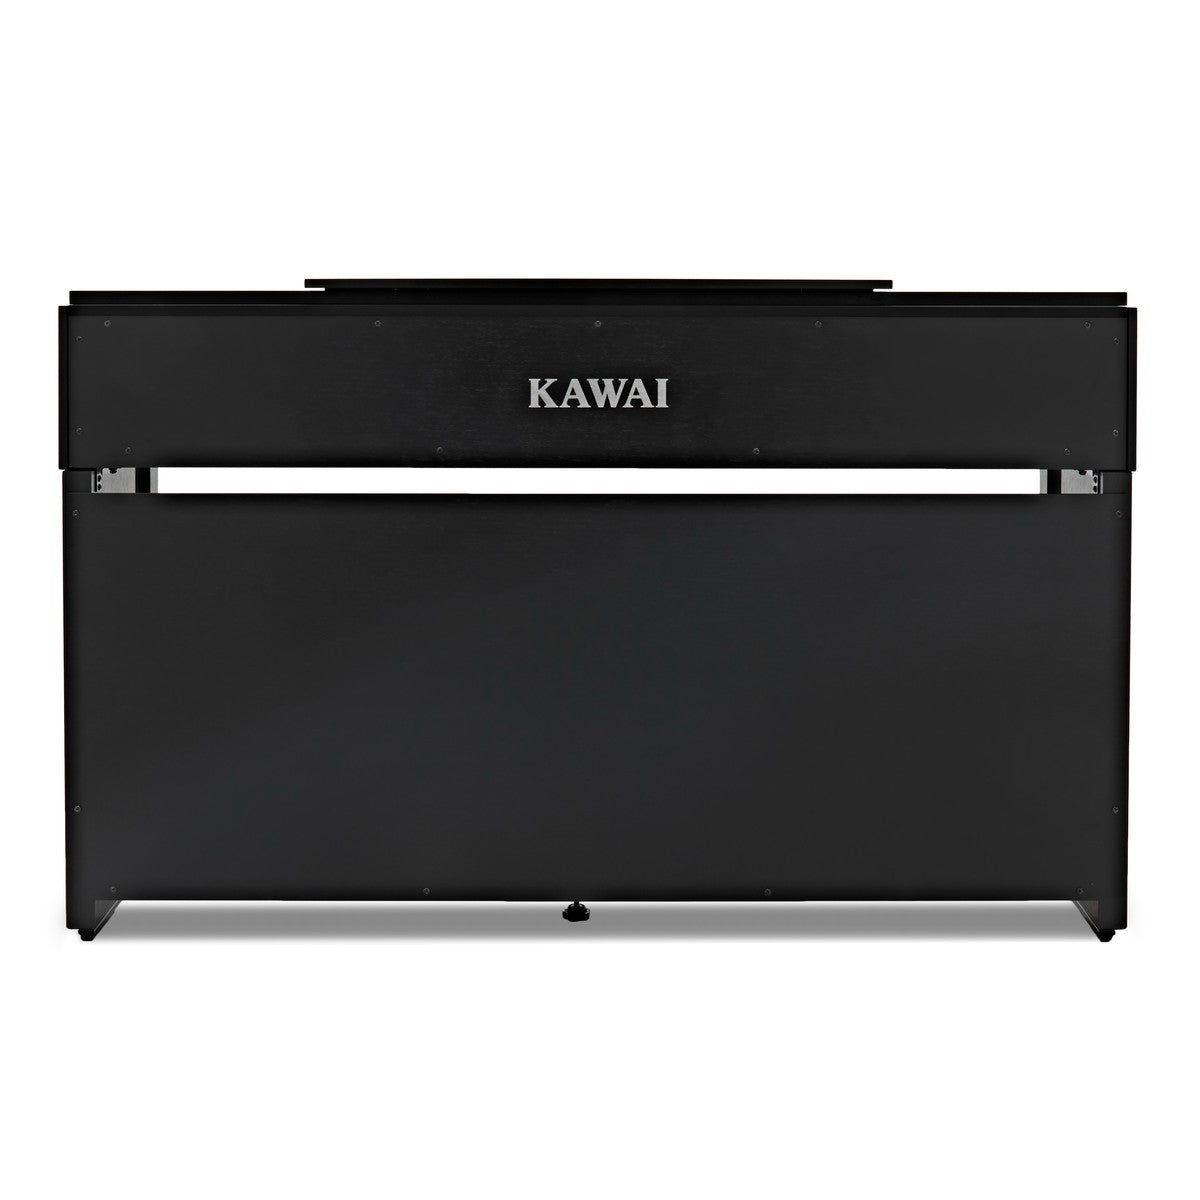 Kawai CN-39 Digital Piano In Premium Rosewood -  Watch Demo Video